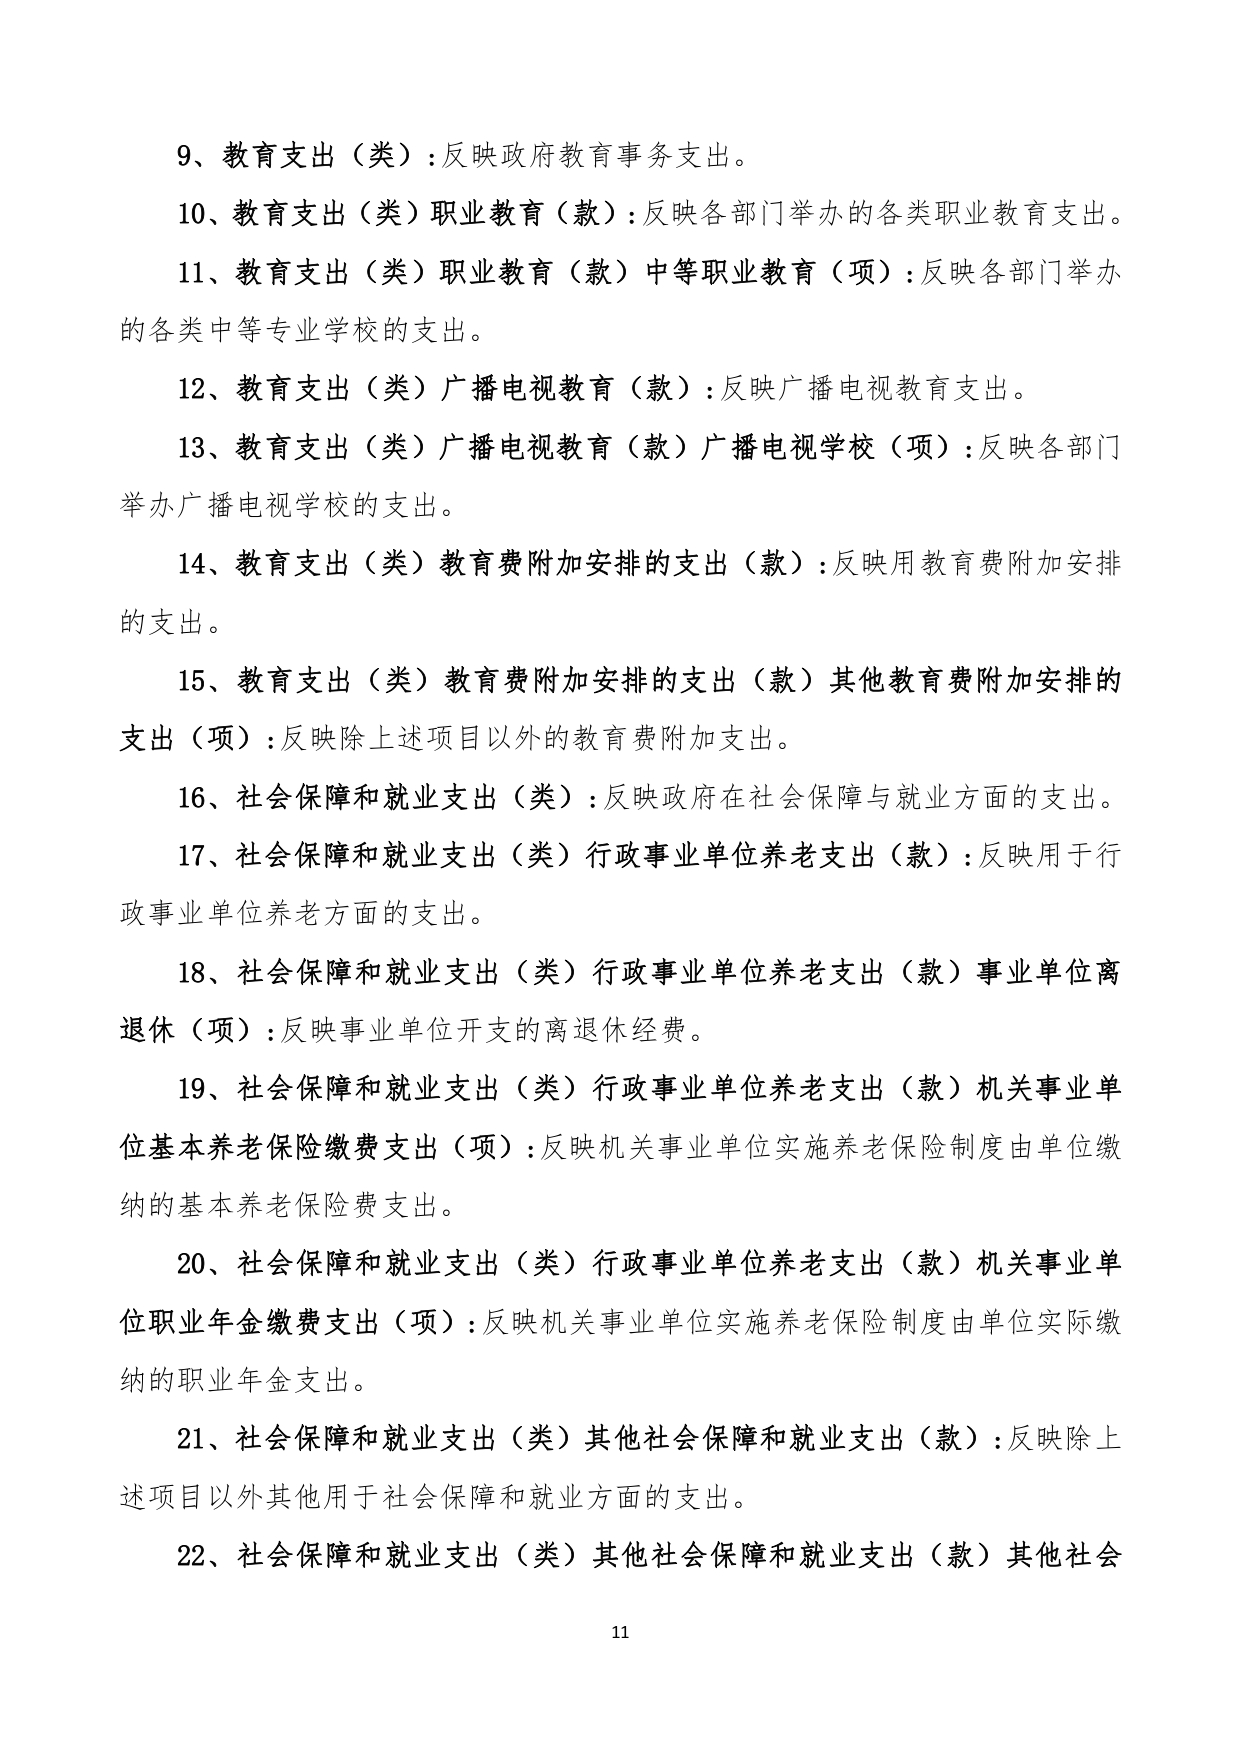 甘肃省广播电视学校2023年单位预算公开报告_page-0012.jpg